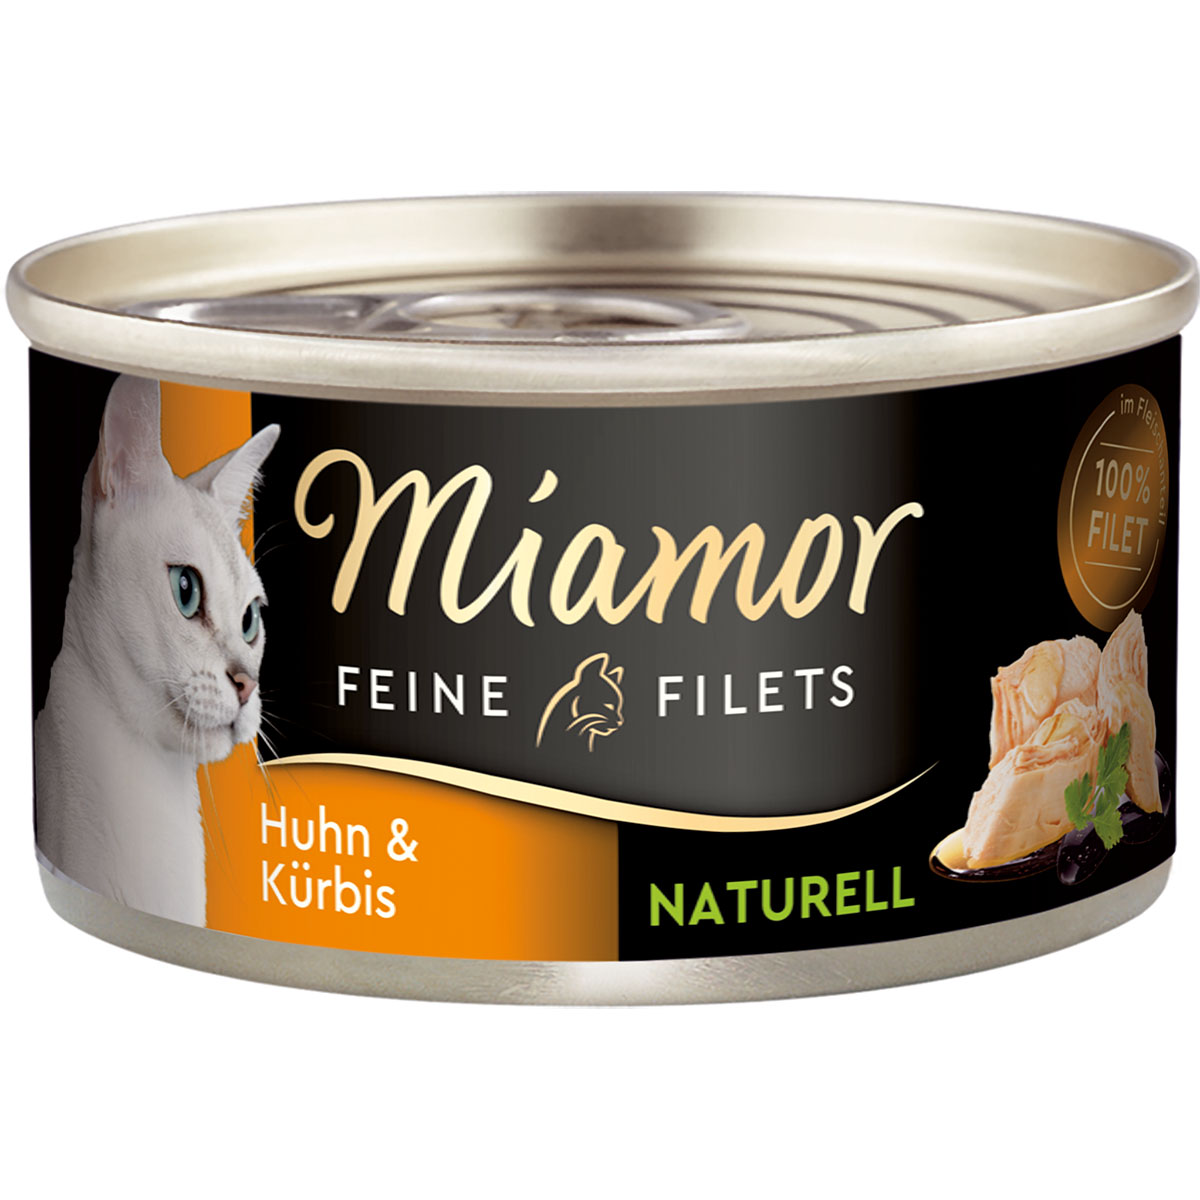 Miamor Feine Filets Naturelle, kuřecí maso a dýně, 80g plechovka 24 × 80 g